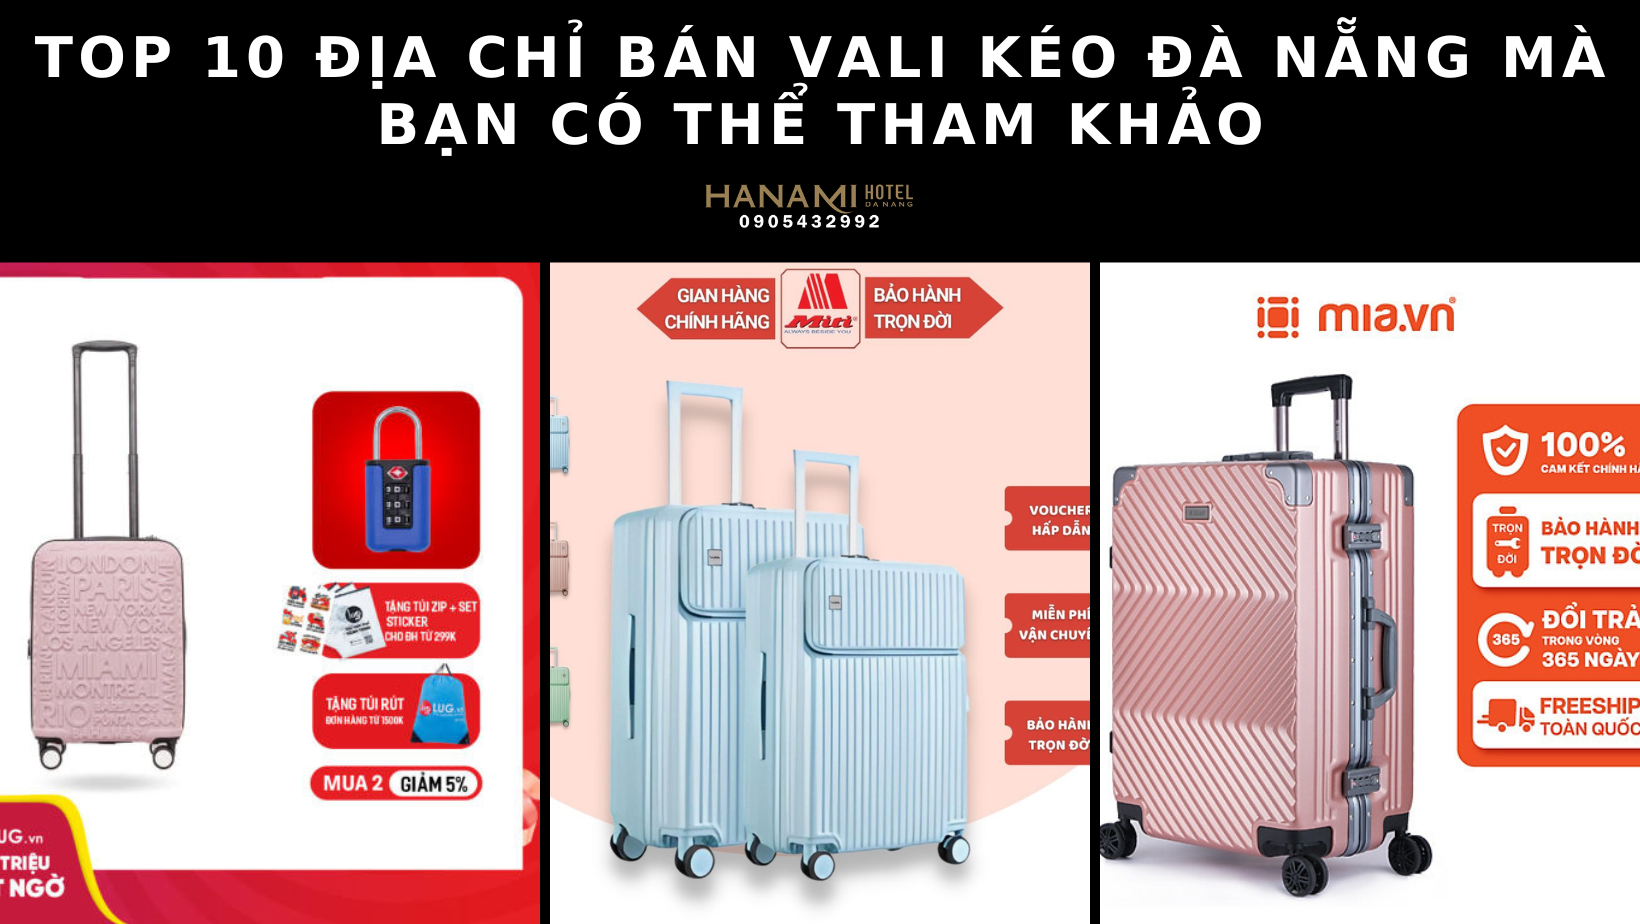 Top 10 địa chỉ bán vali kéo Đà Nẵng mà bạn có thể tham khảo